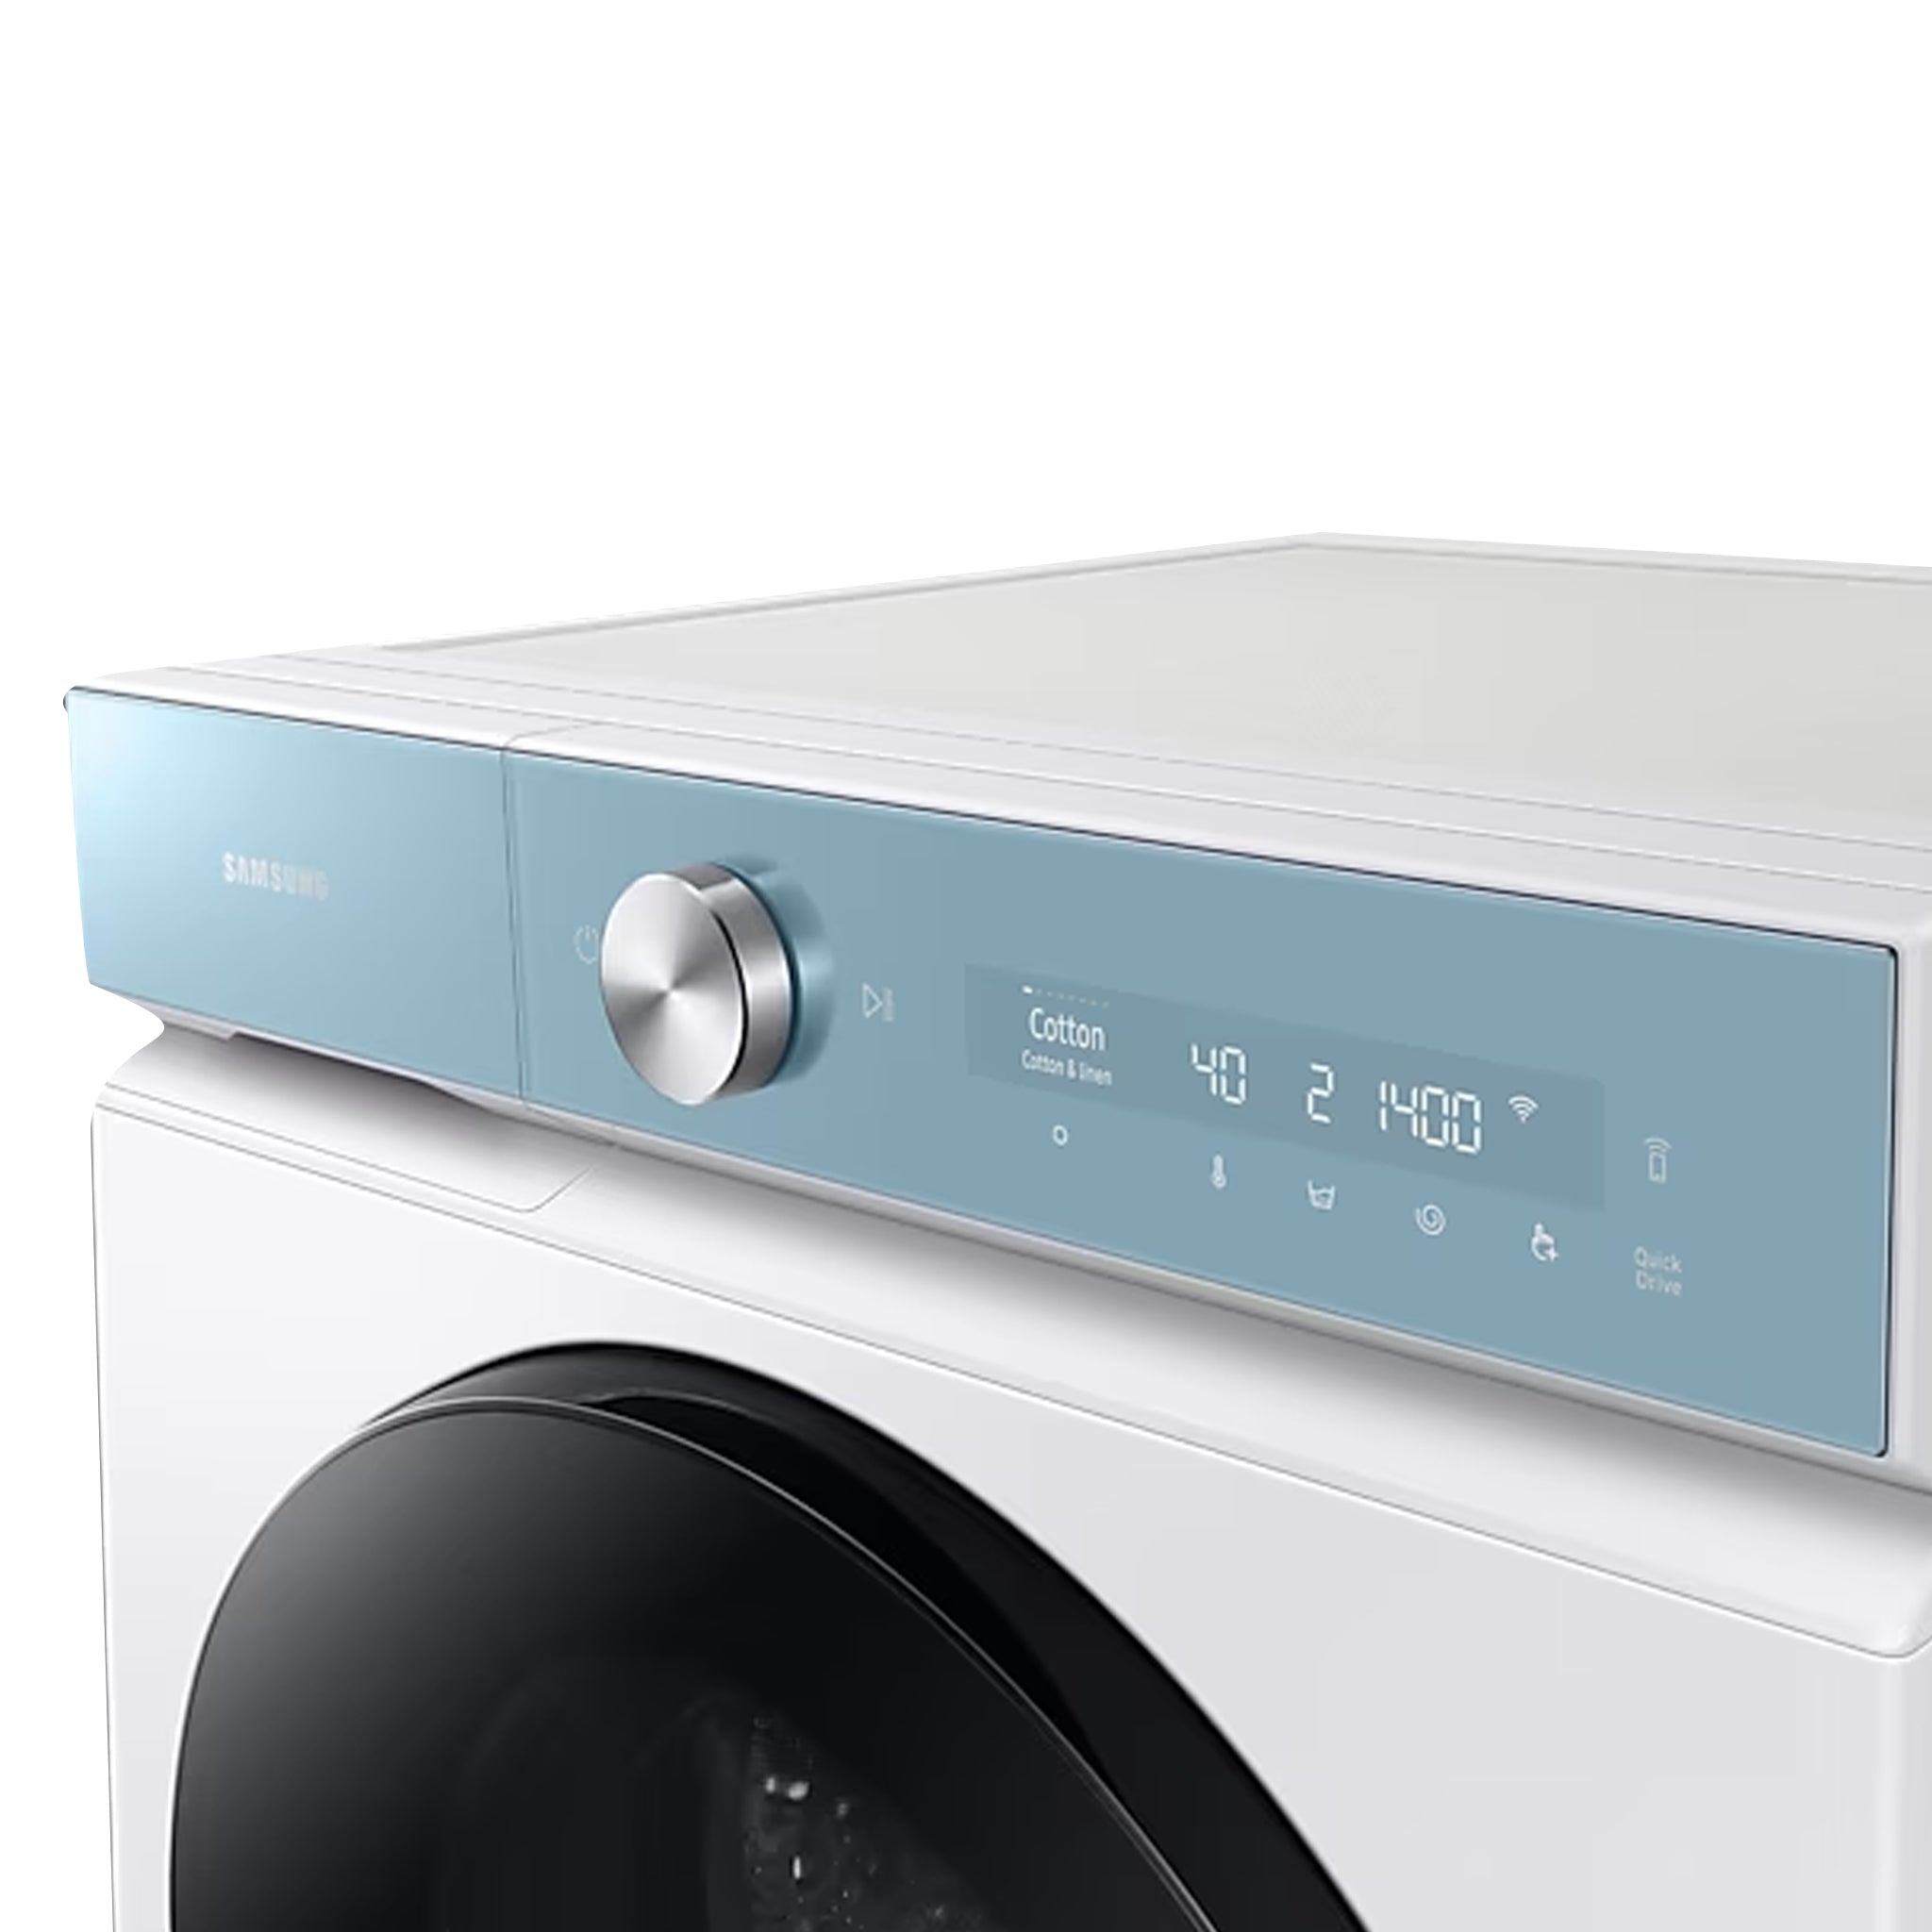 SAMSUNG WD9400B 13/8 kg Front Load Washer Dryers Washing Machine Samsung